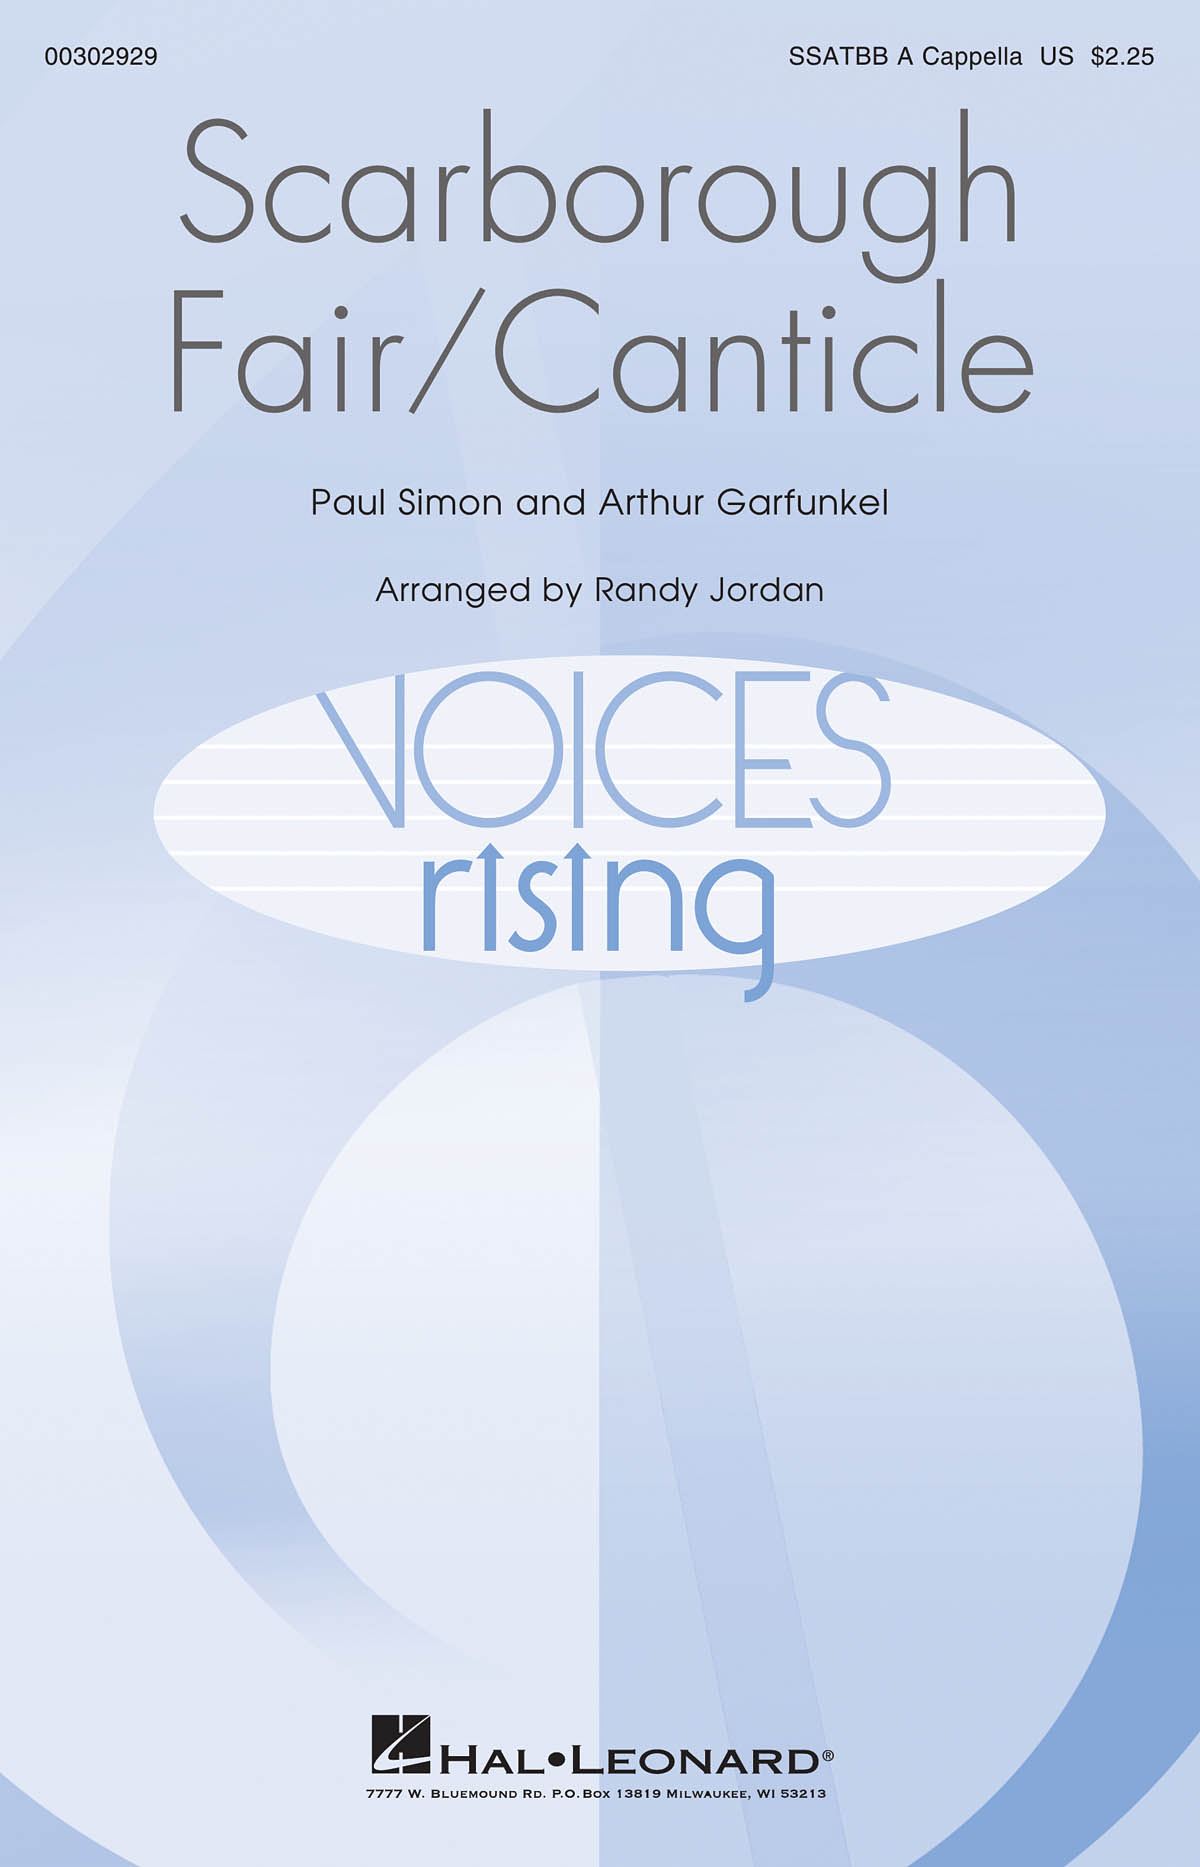 Art Garfunkel Paul Simon: Scarborough Fair/Canticle: Mixed Choir a Cappella: